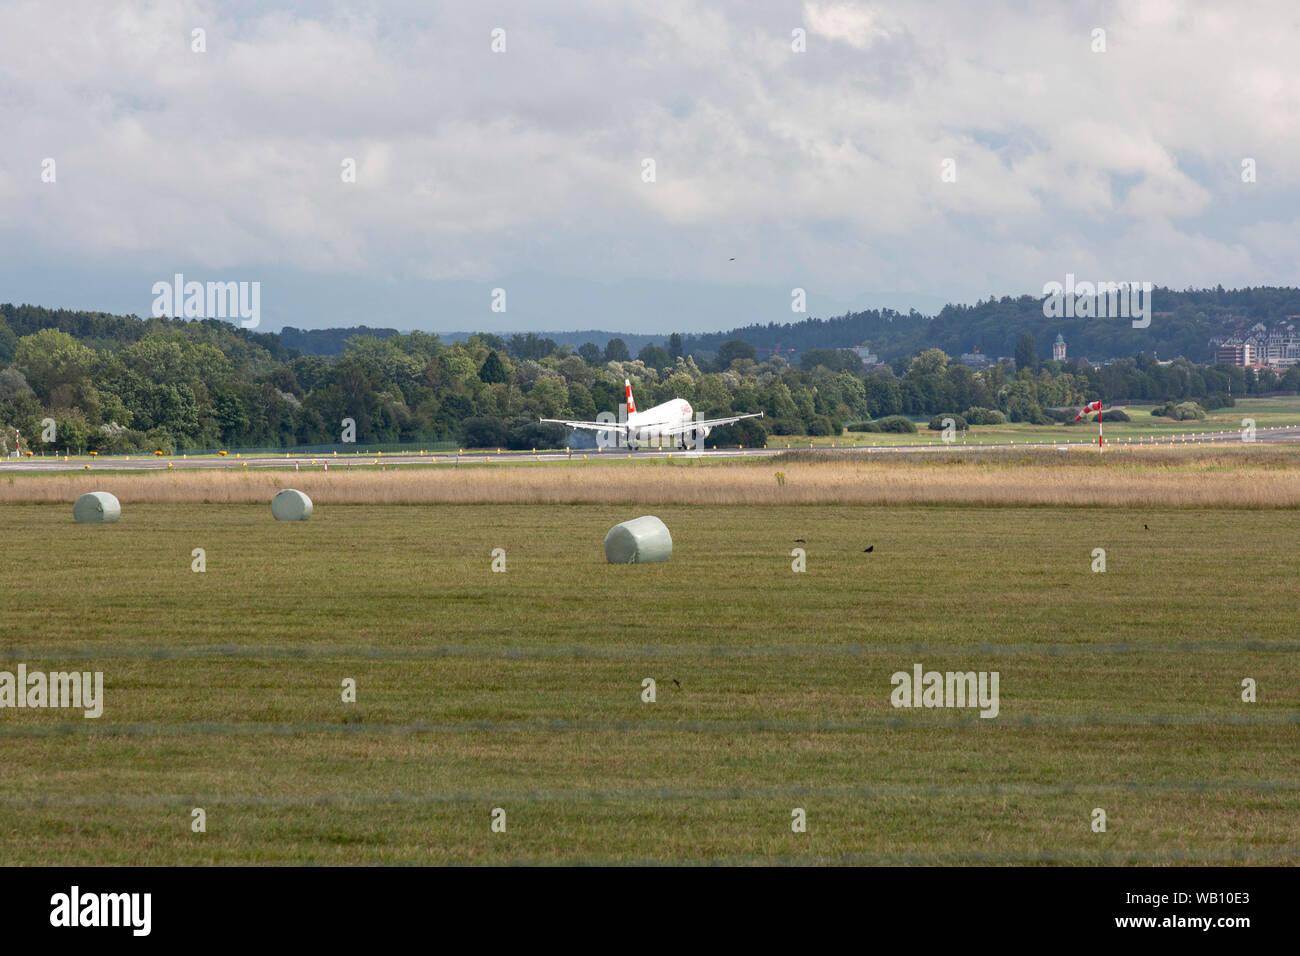 Airbus A321-111, Reg: HB-IOC beim Anflug zum Flughafen Zürich (ZRH). 15.08.2019 Stock Photo